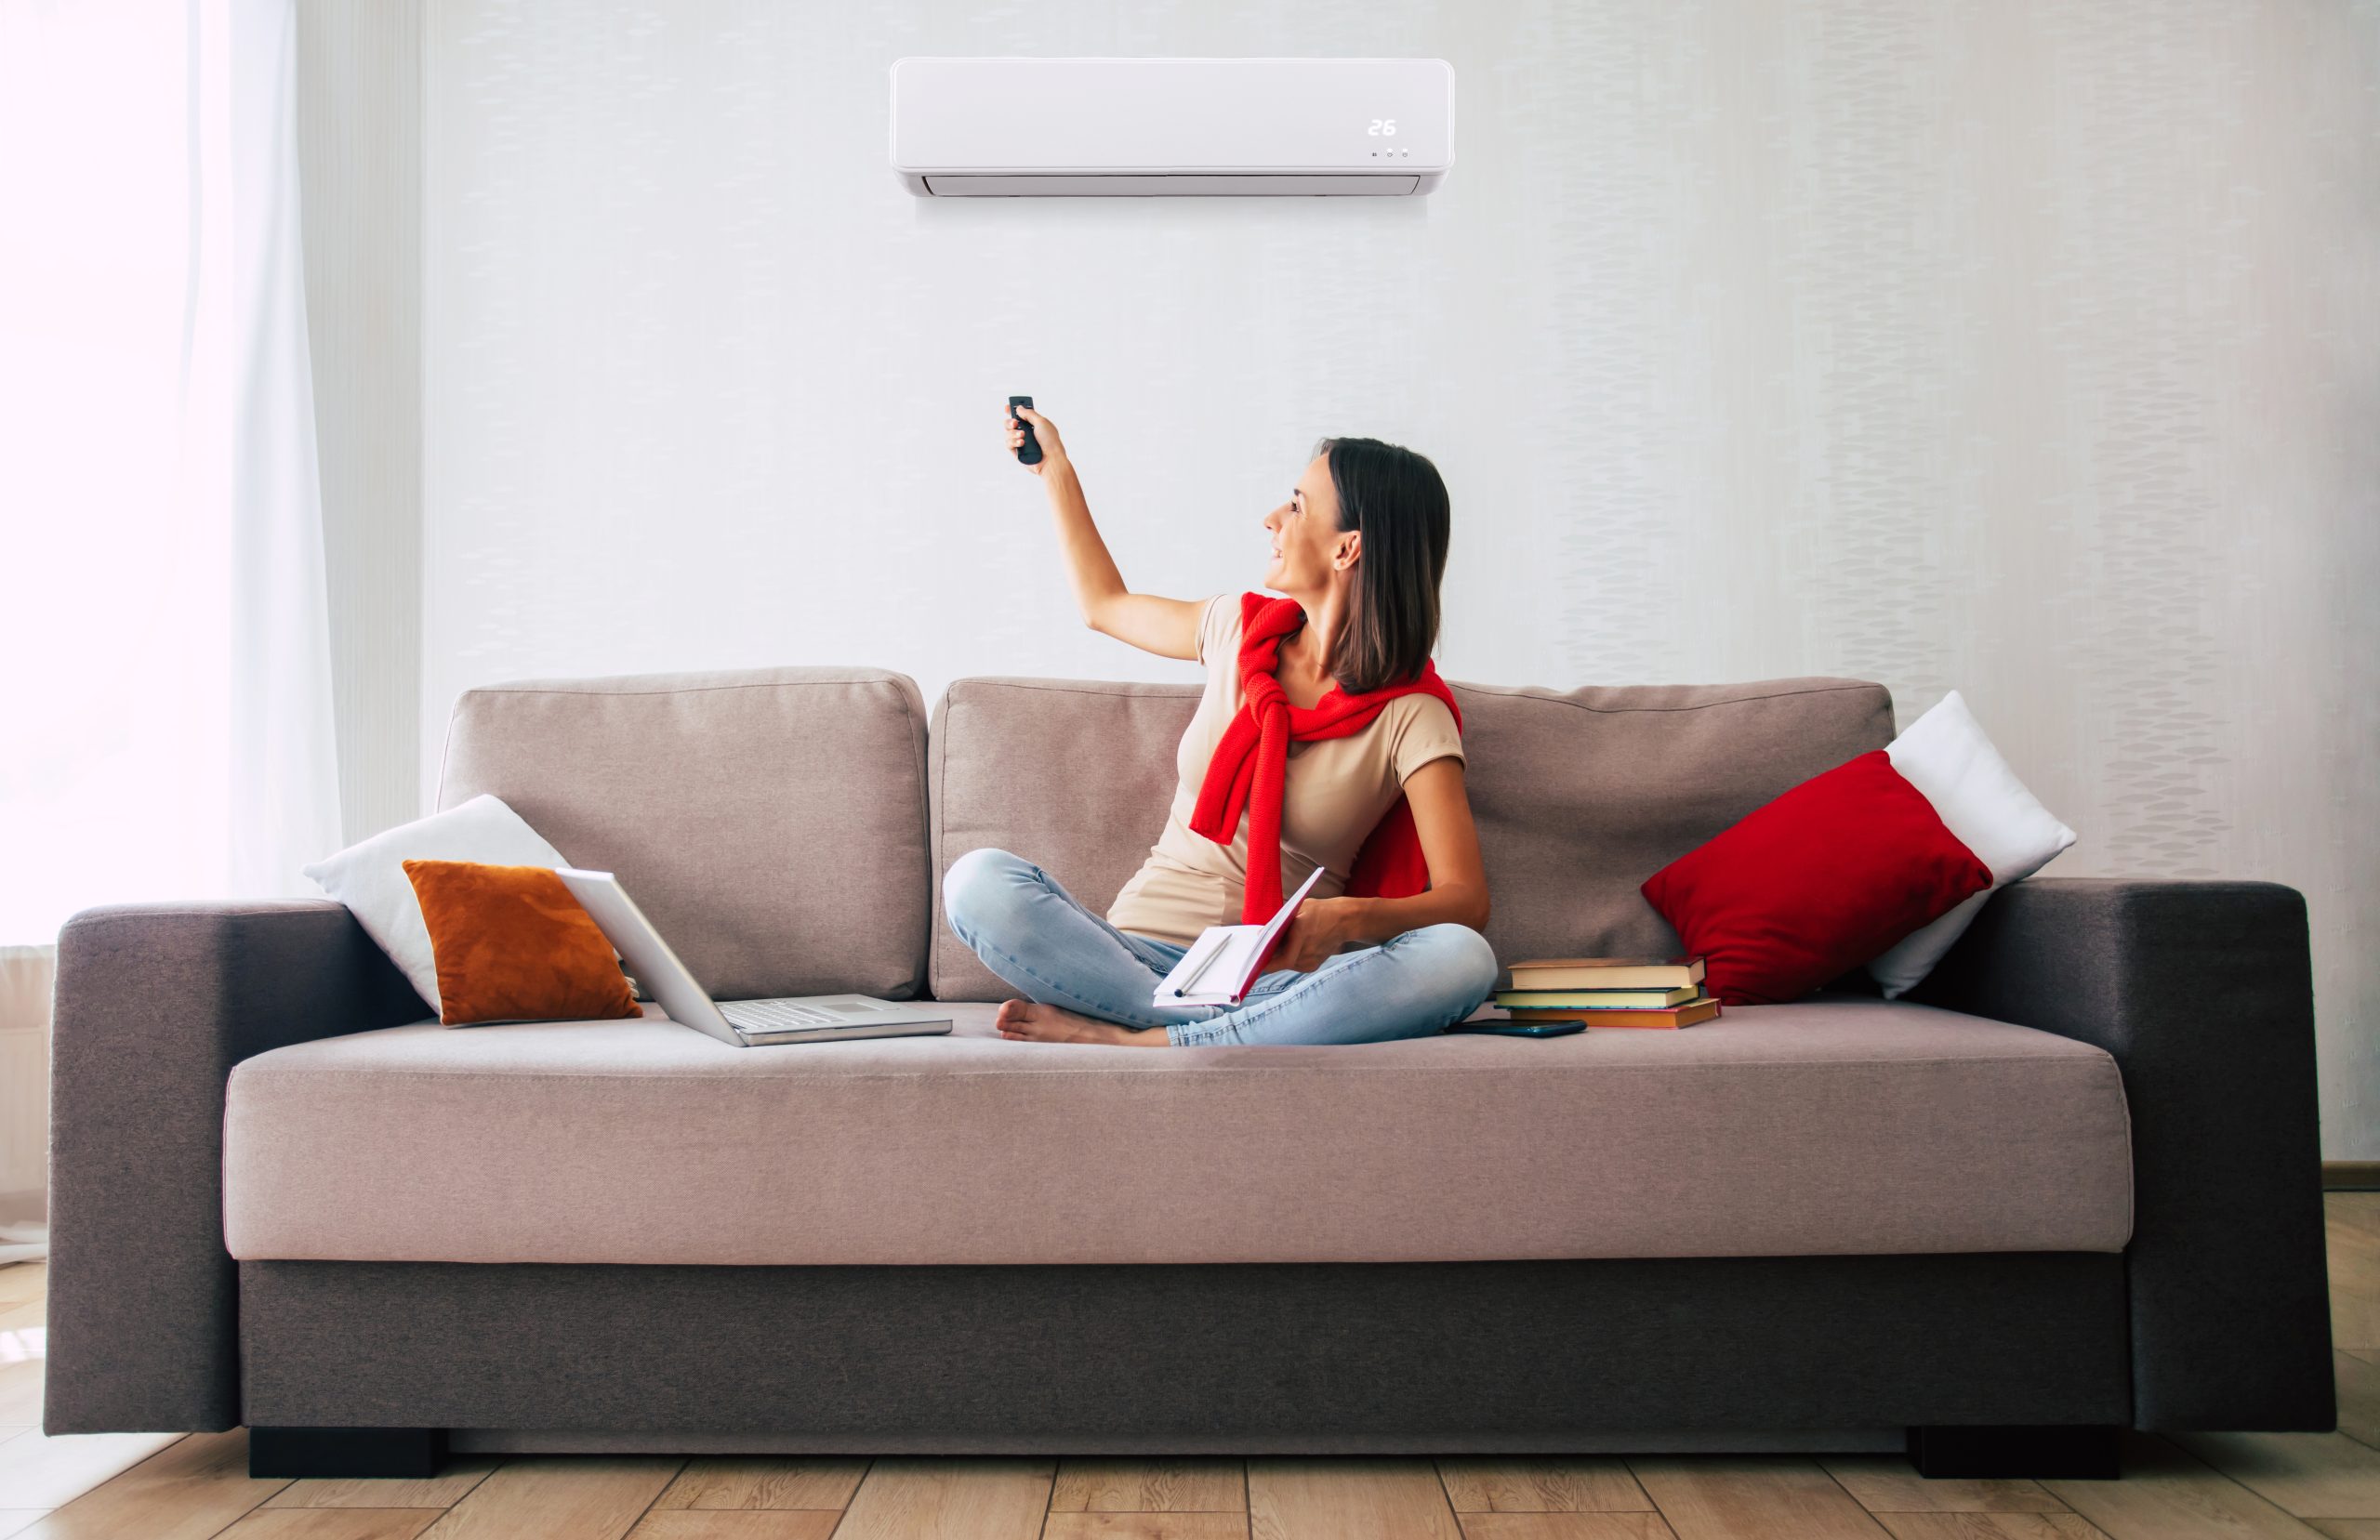 Une femme régalant sa climatisation réversible pour maitriser sa consommation énergetique